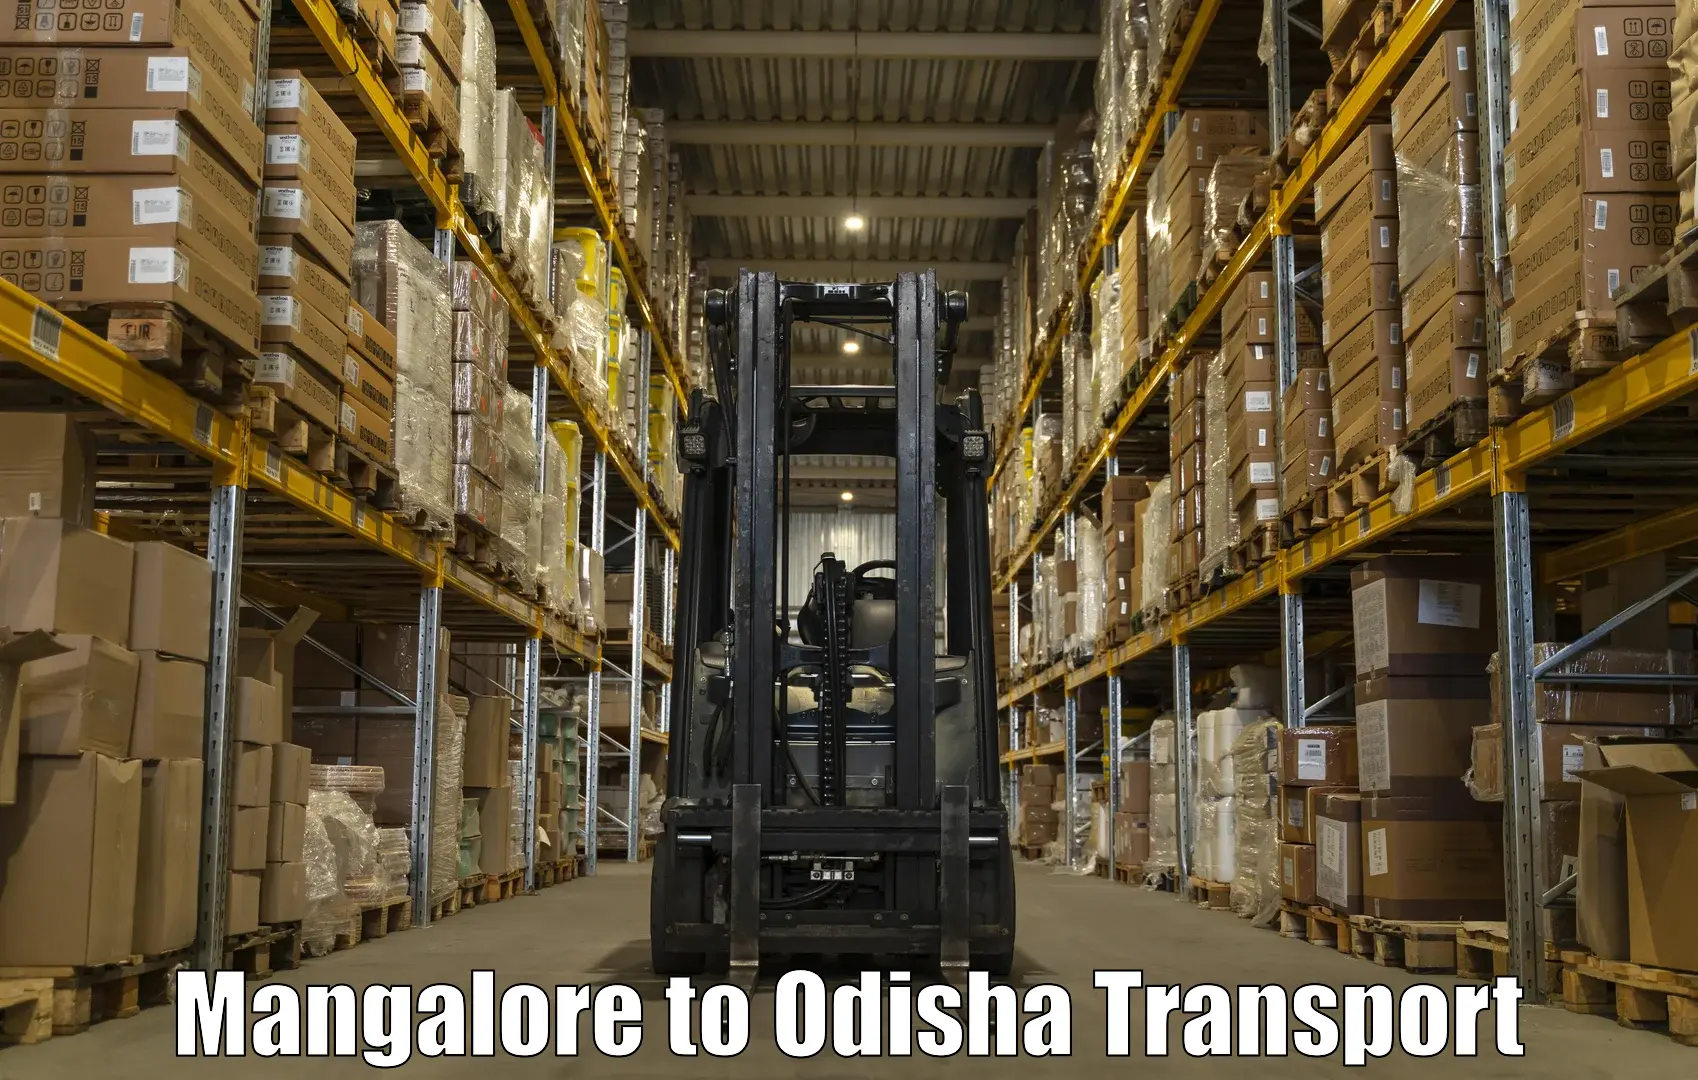 Delivery service Mangalore to IIT Bhubaneshwar